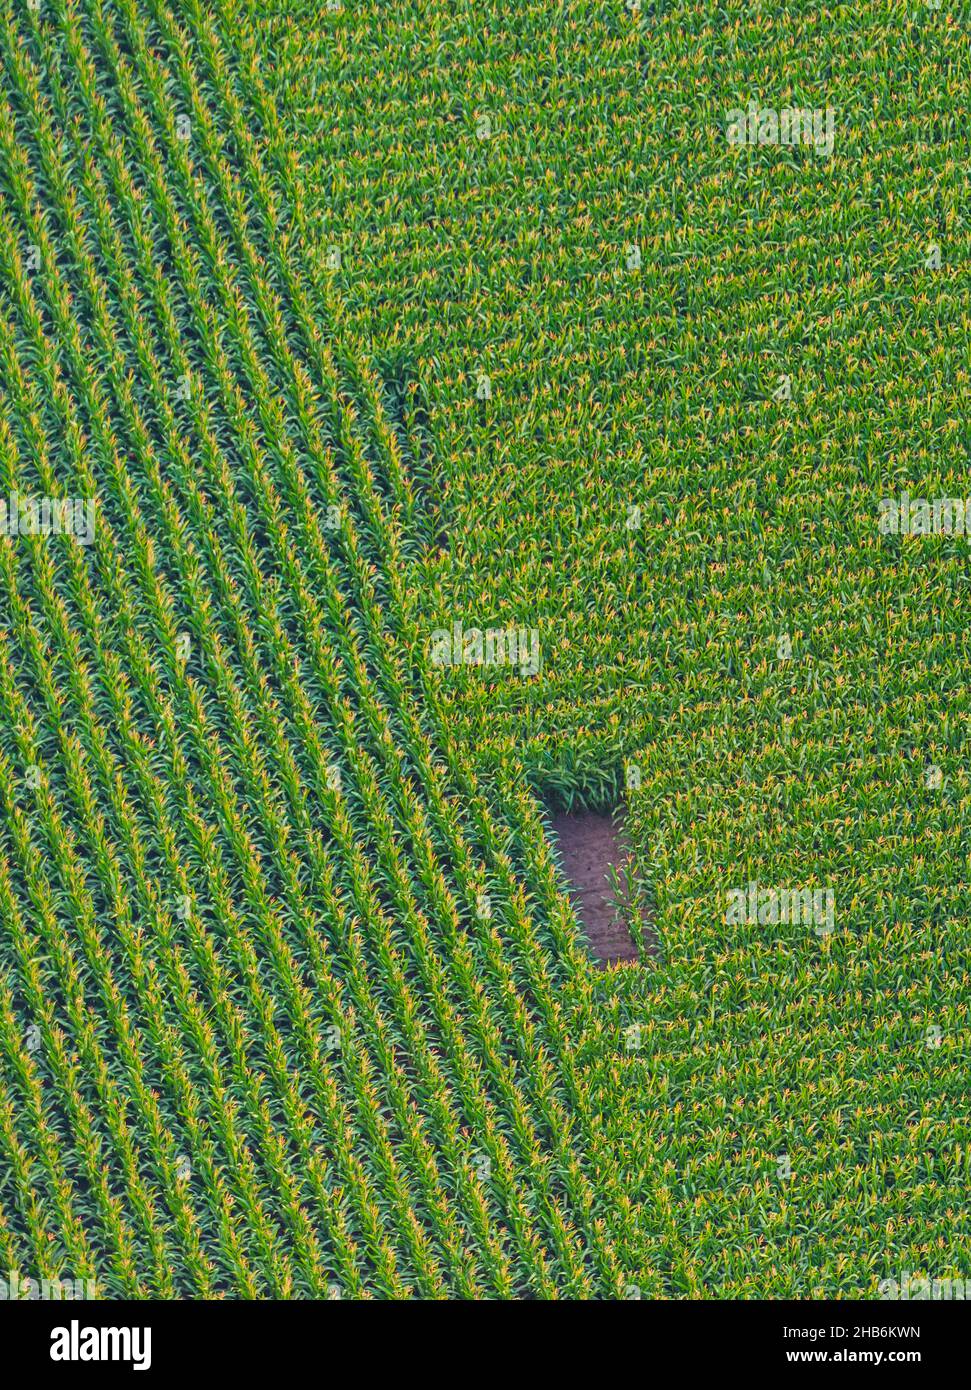 Campo de maíz desde arriba, vista aérea, Alemania, Schleswig-Holstein Foto de stock